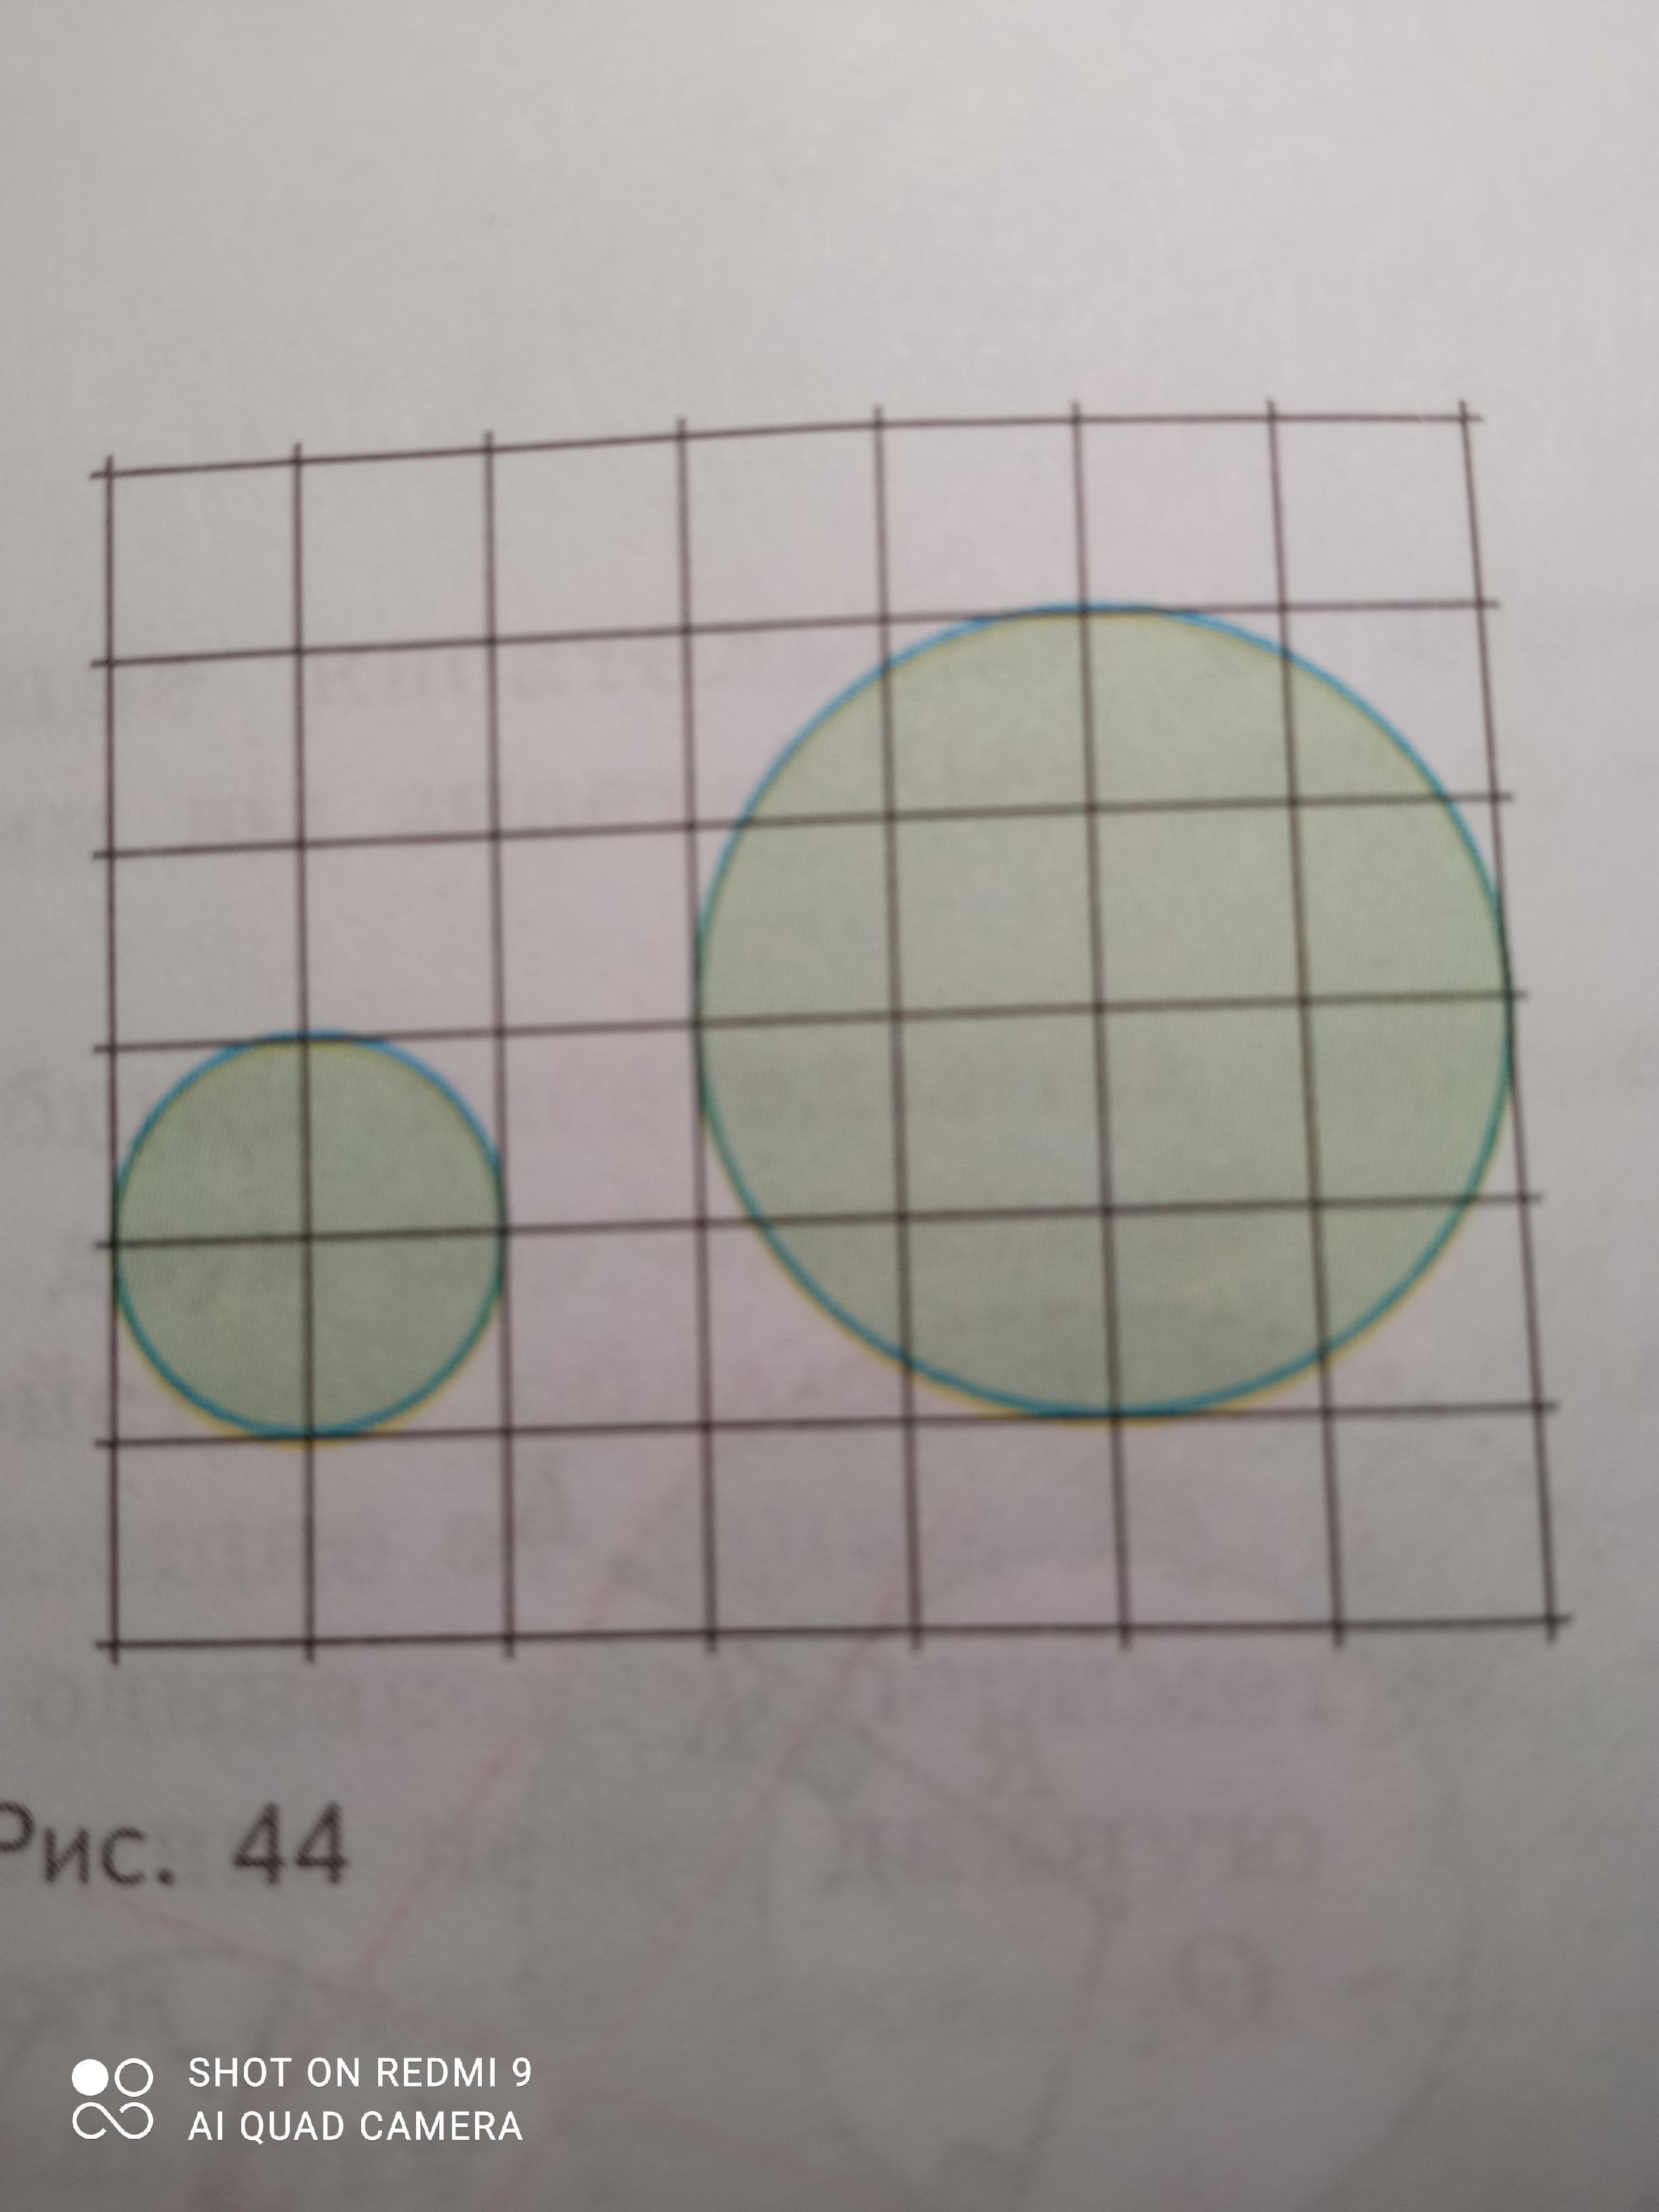 На клеточной бумаге изображен круг. Круг на клетчатой бумаге. На клетчатой бумаге изображена окружность. Шар на клетчатой бумаге. На клетчатой бумаге изображён круг площадью 20.